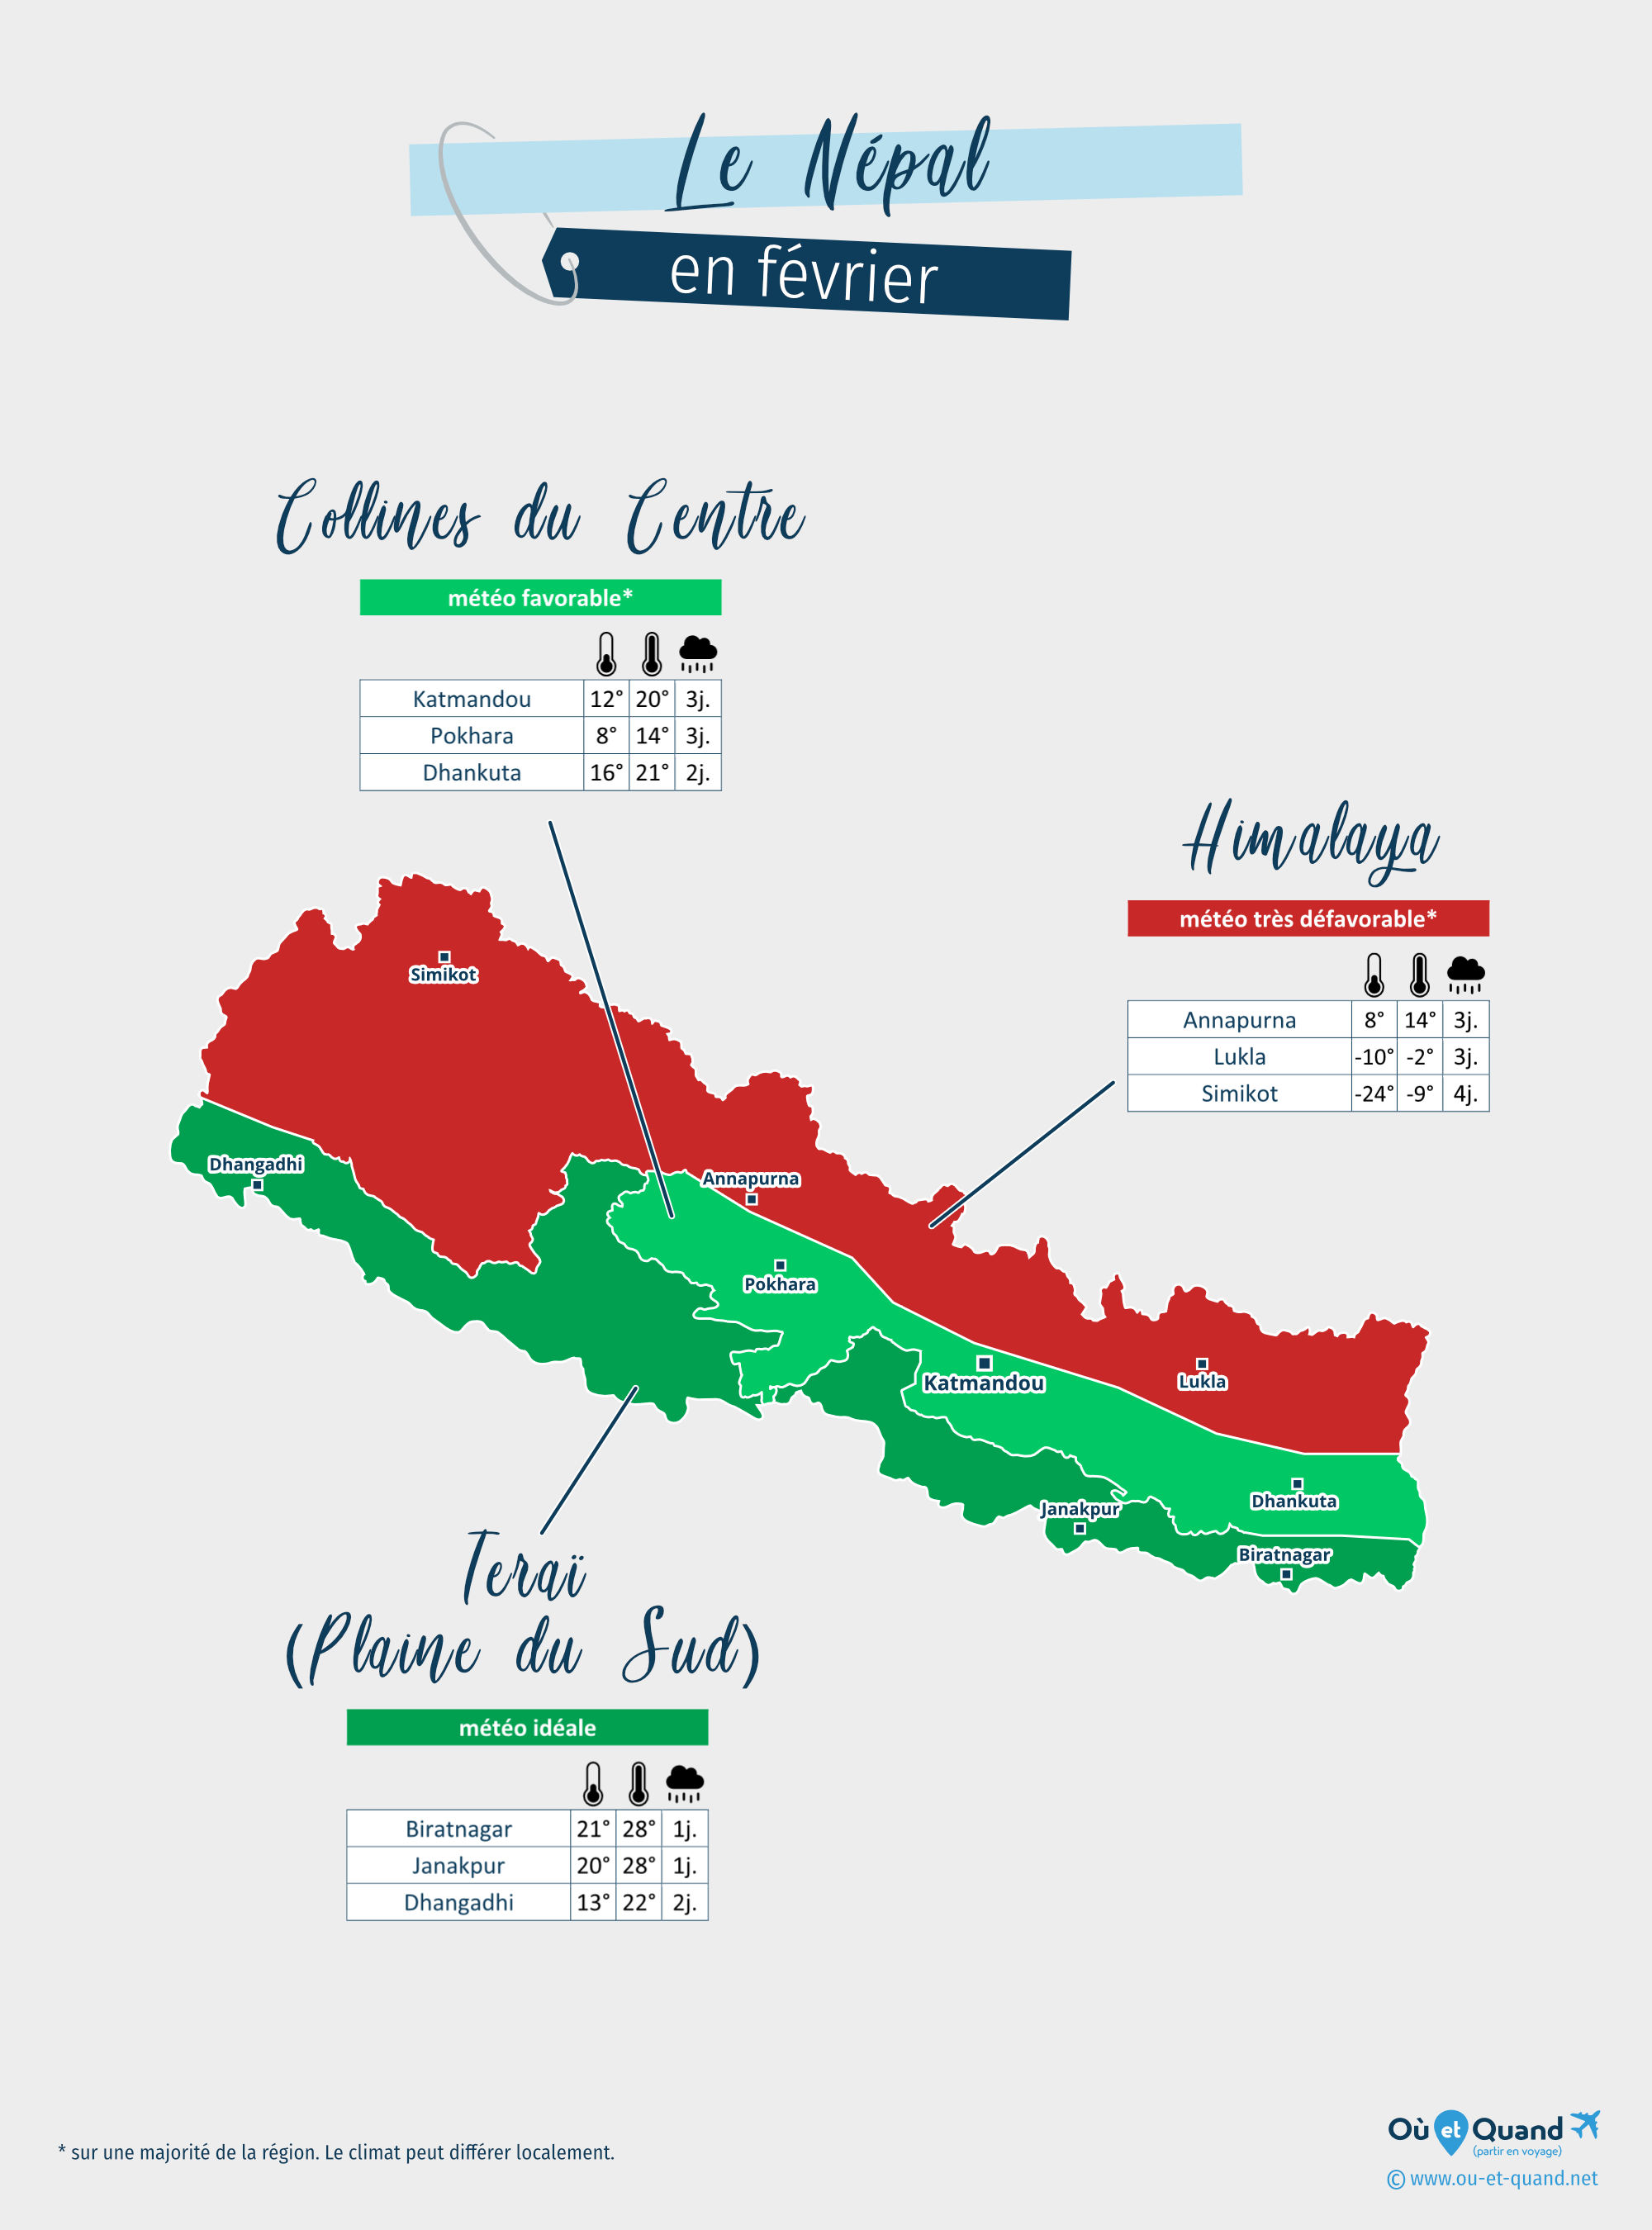 Carte de la météo en février dans les régions du Népal